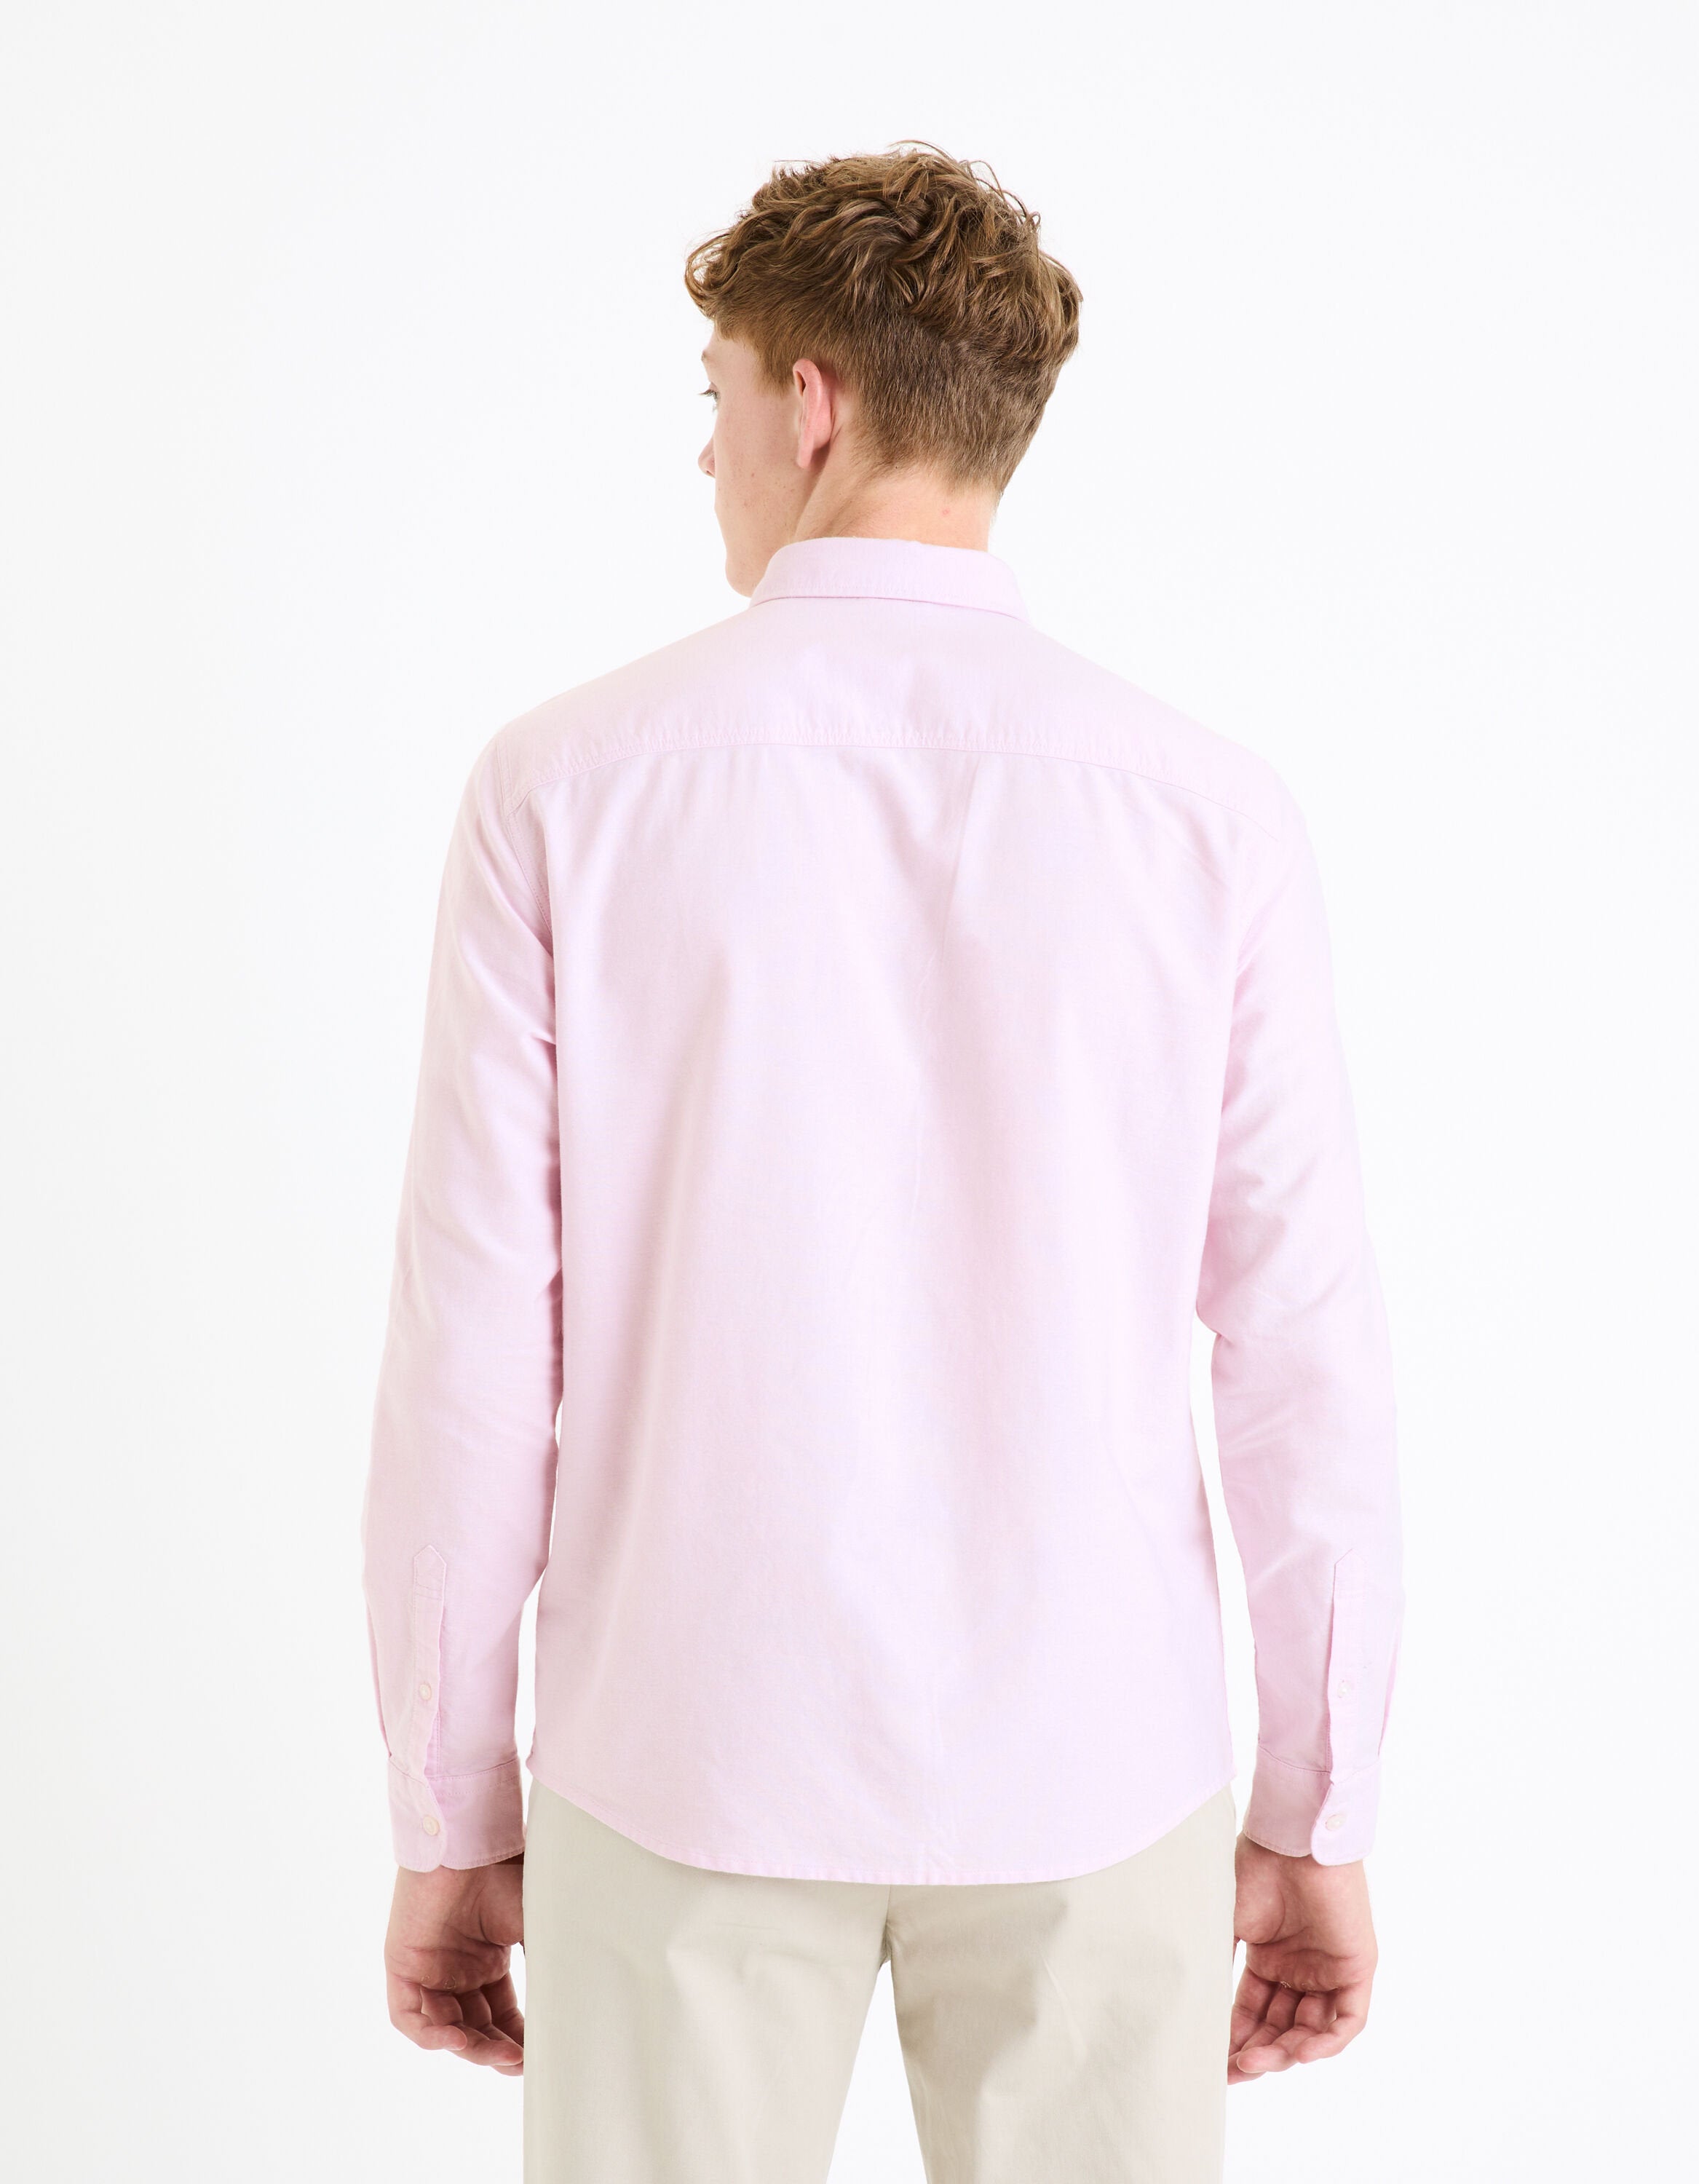 Regular Shirt 100% Oxford Cotton - Light Pink_DAXFORD_LIGHT PINK_04